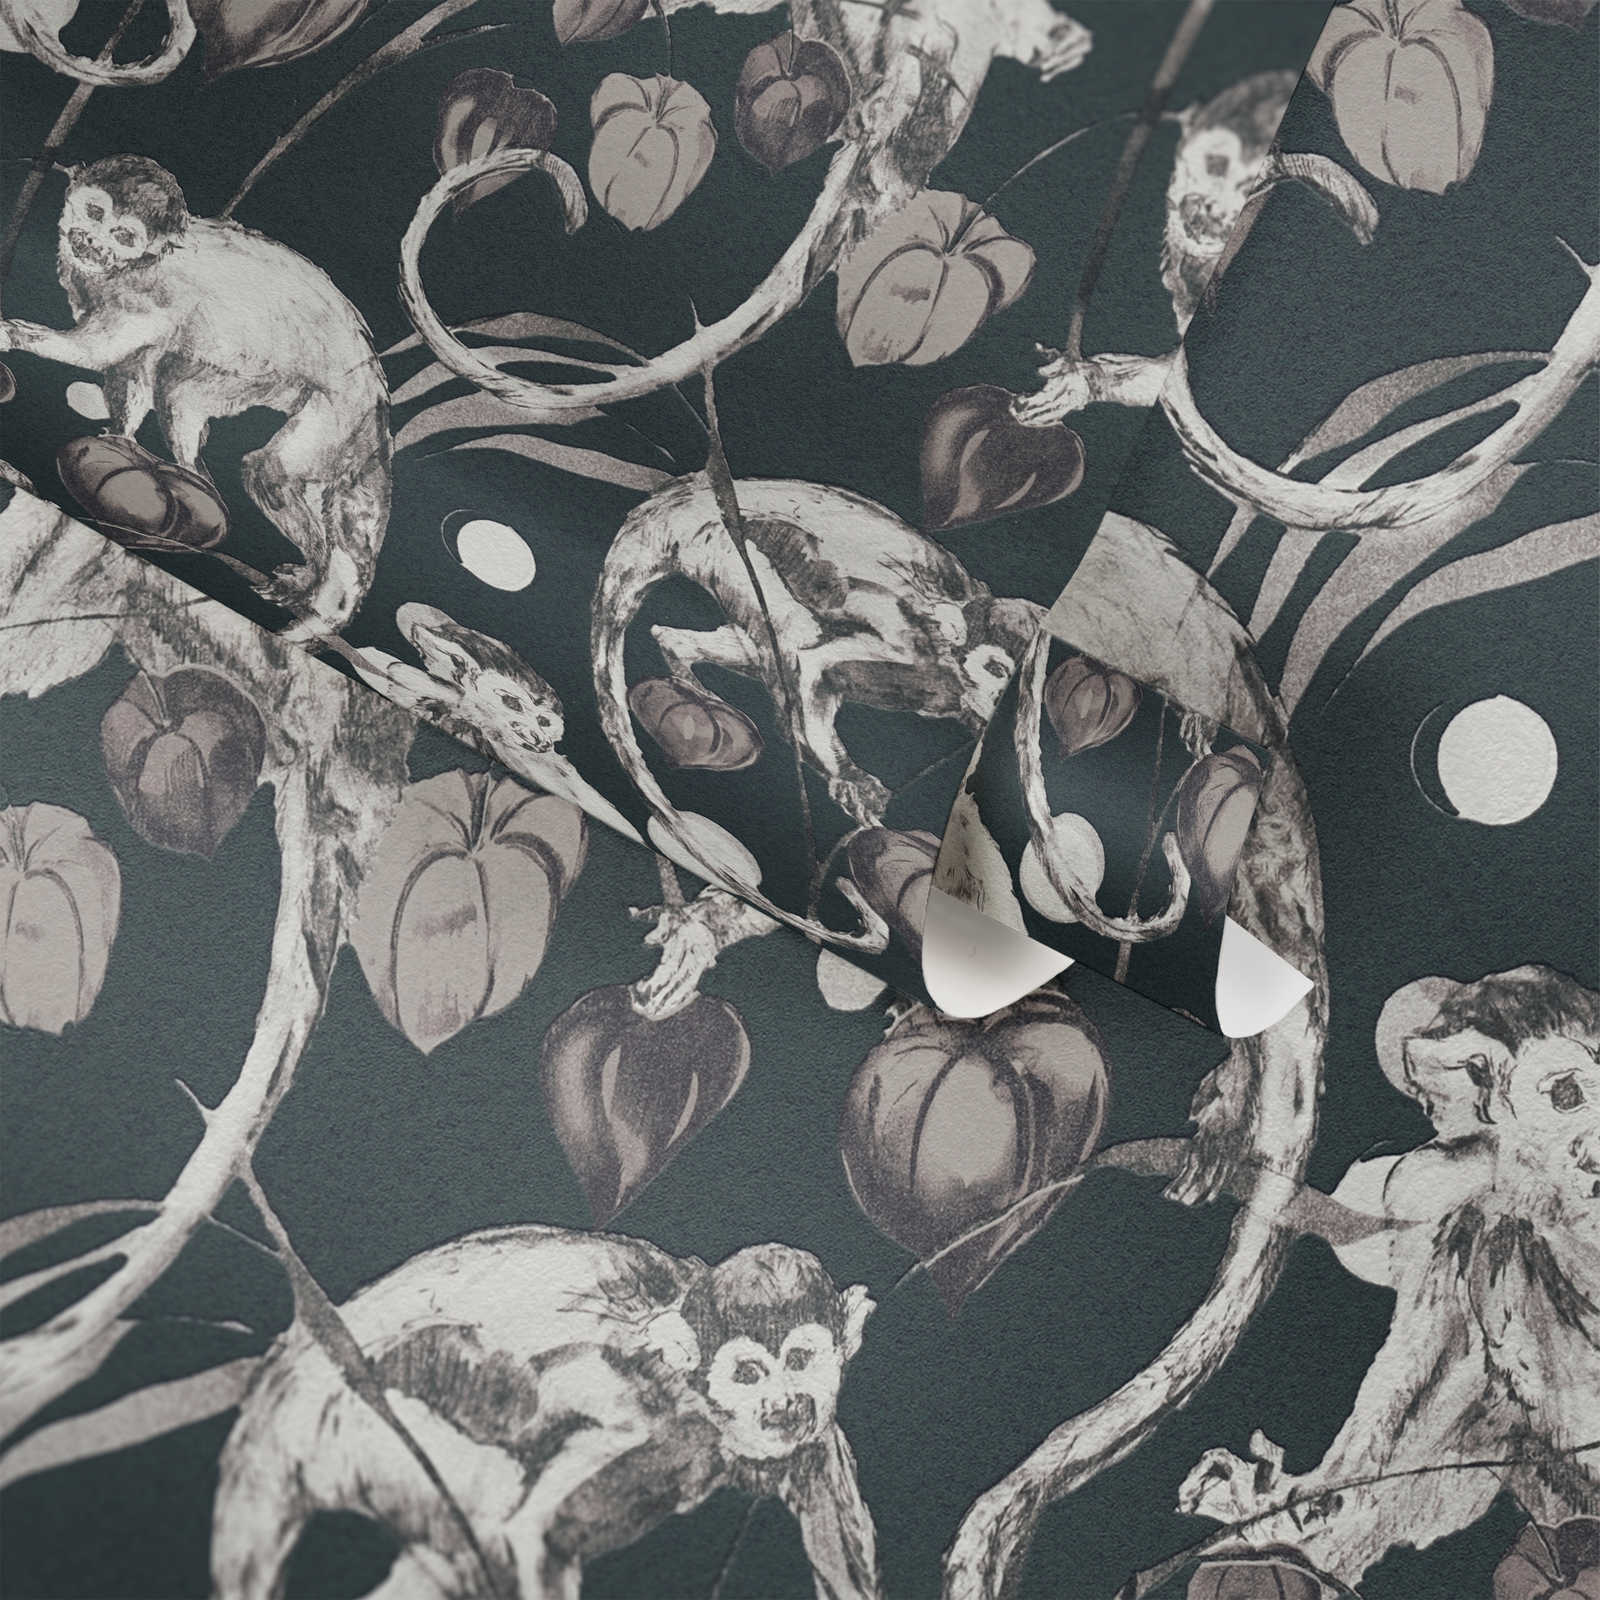             Papel pintado no tejido oscuro diseño monos y hojas de MICHALSKY
        